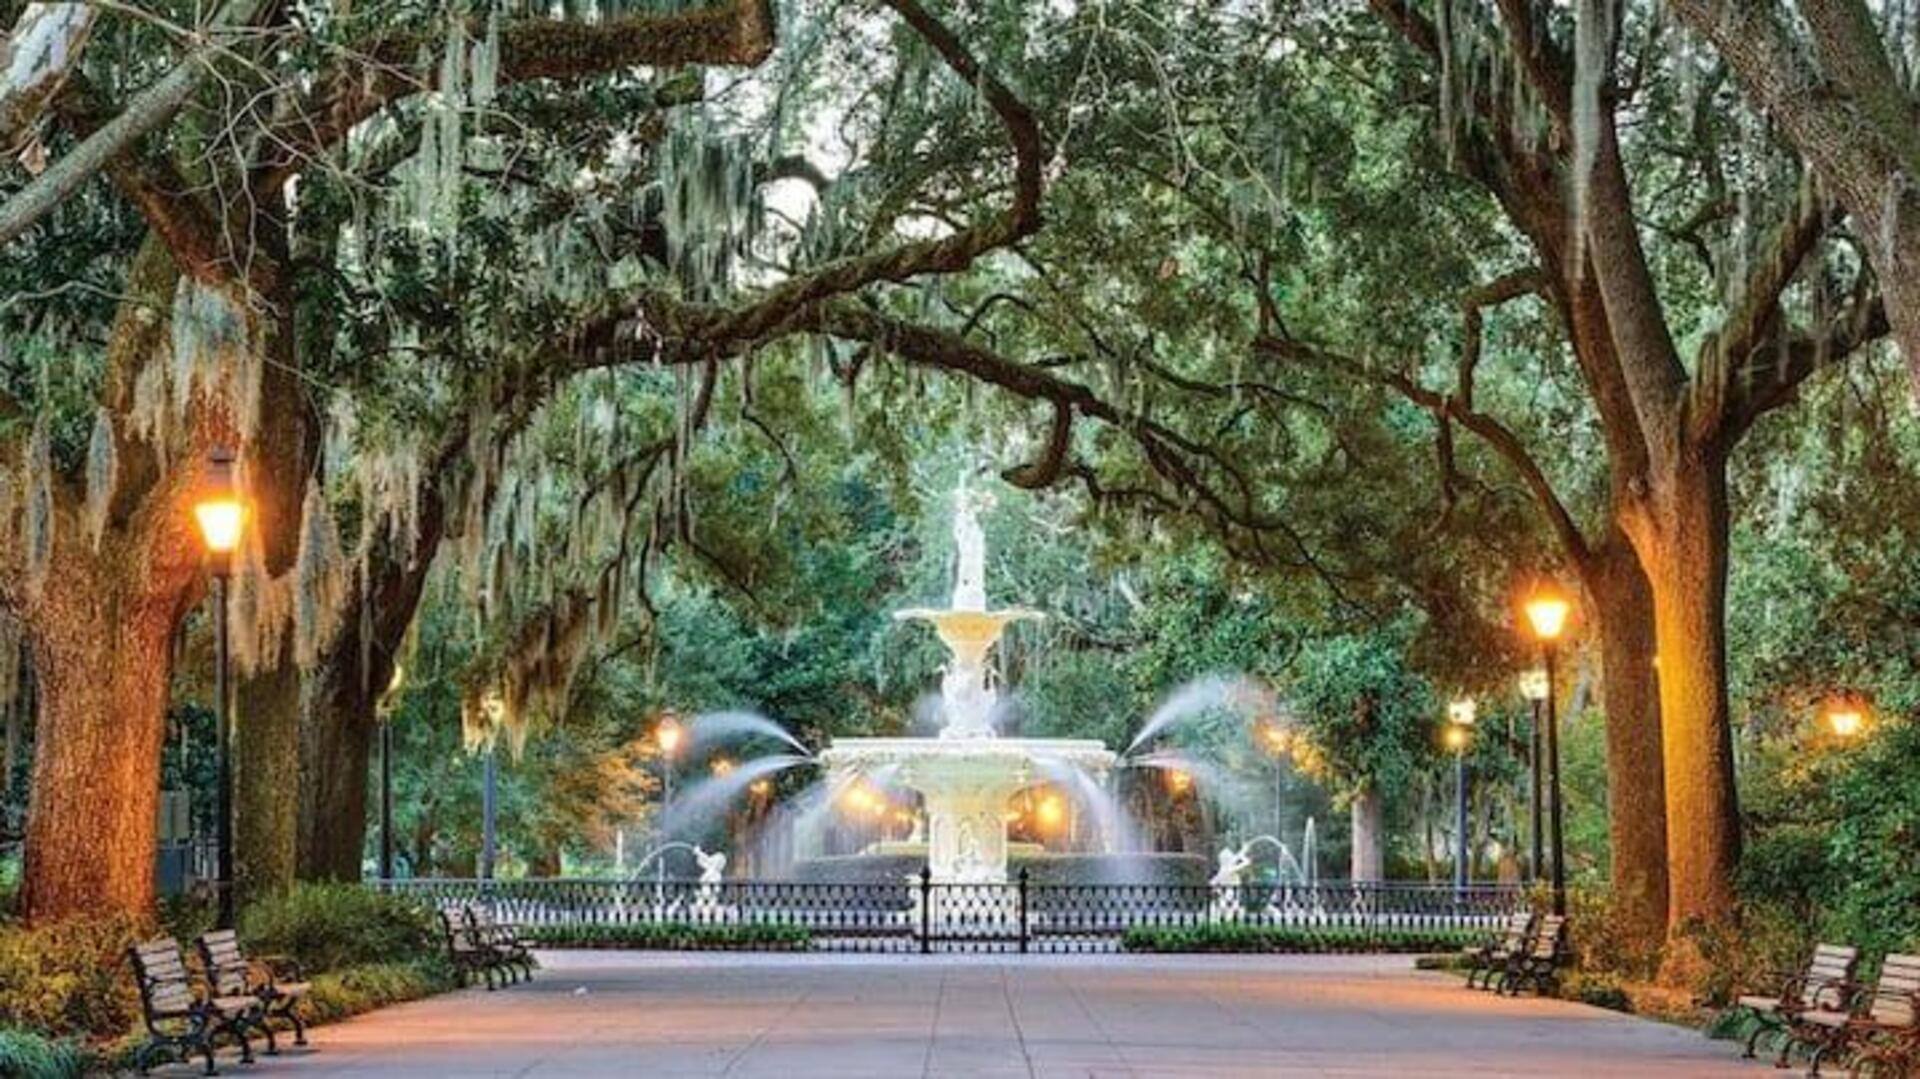 Temukan Keindahan Abadi Dari Wilayah Savannah Dengan Panduan Wisata Ini